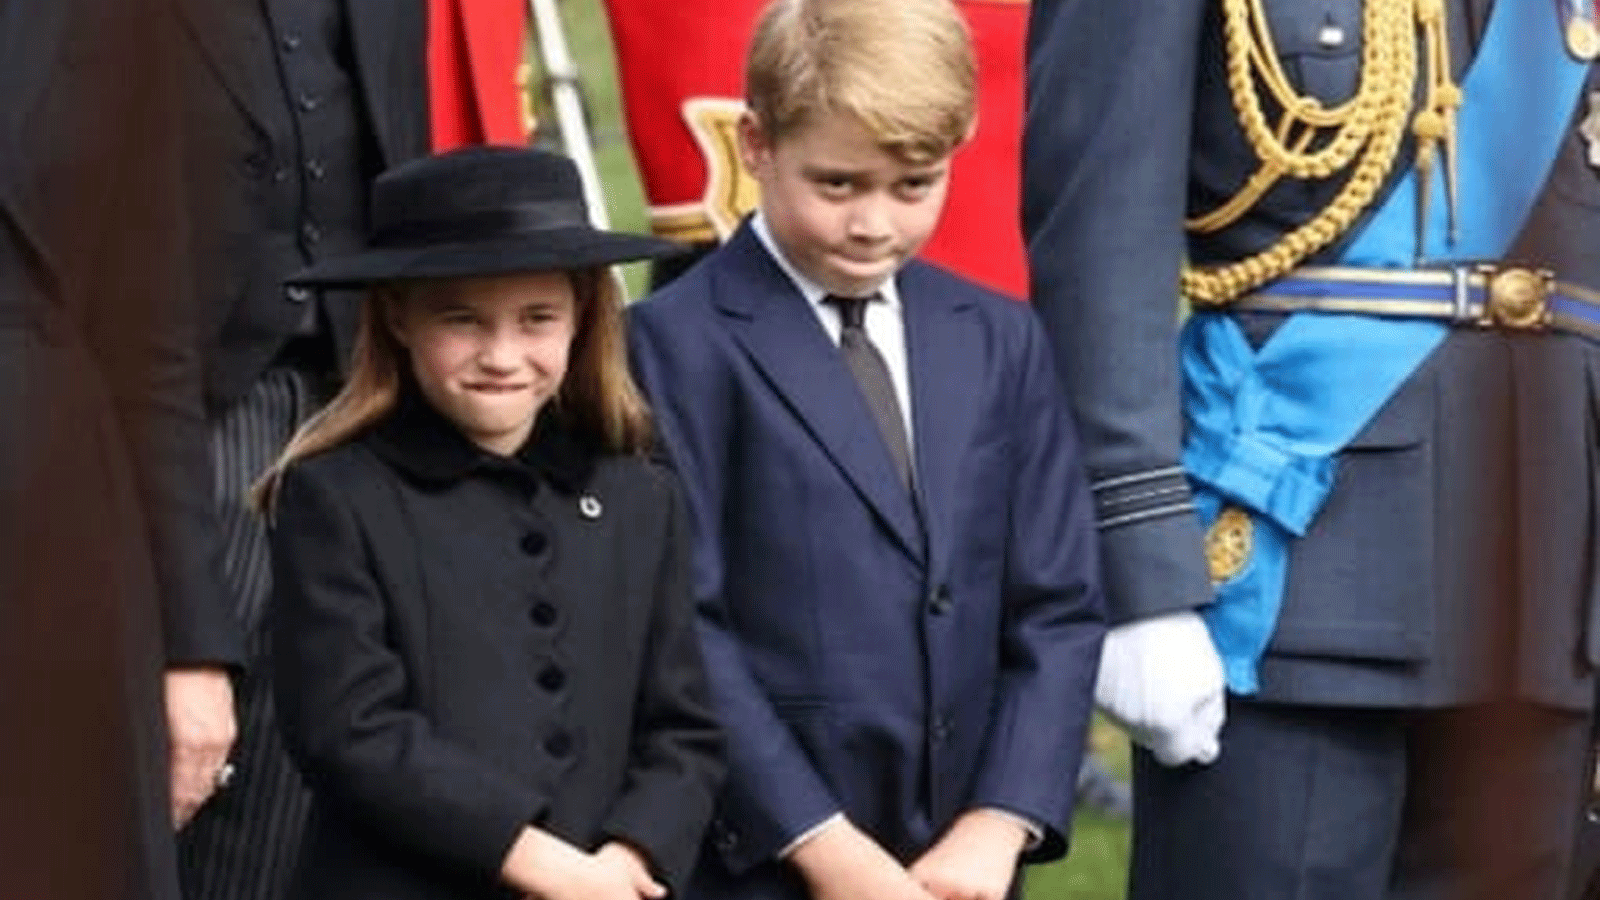 الأمير جورج، تسعة أعوام، والأميرة شارلوت، سبع سنوات، يسيران مع والدتهما كاثرين، أميرة ويلز والأب ويليام، أمير ويلز، الذي أصبح الأول في ترتيب العرش بعد الملك تشارلز الثالث